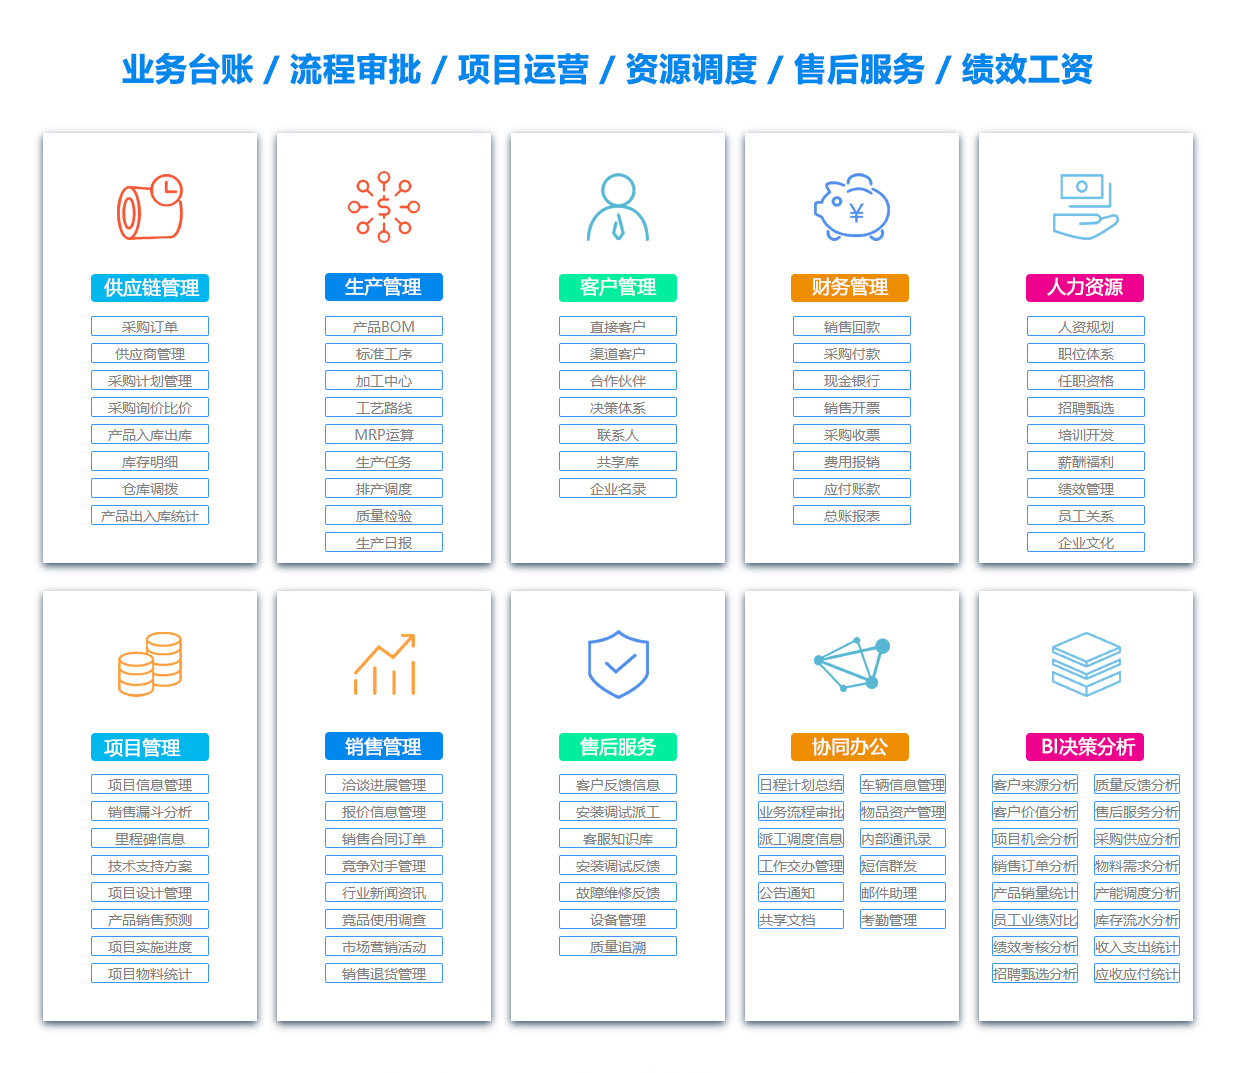 上海BOM:物料清单软件